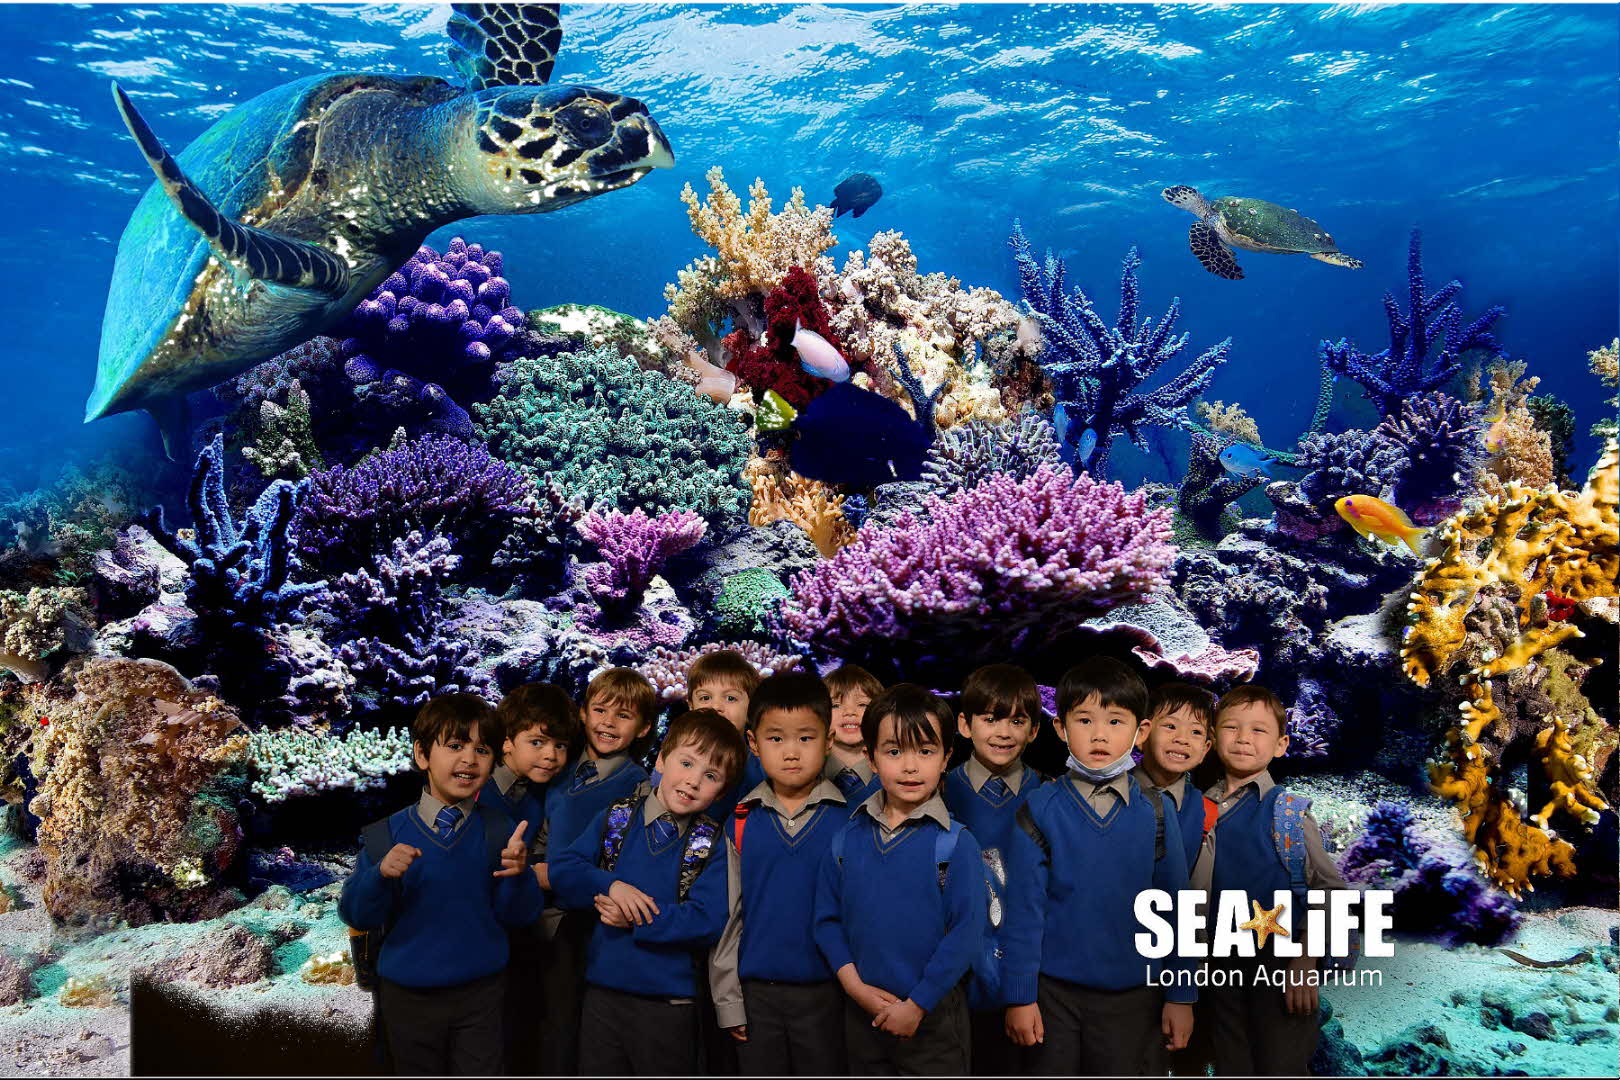 Reception visit the London Aquarium.